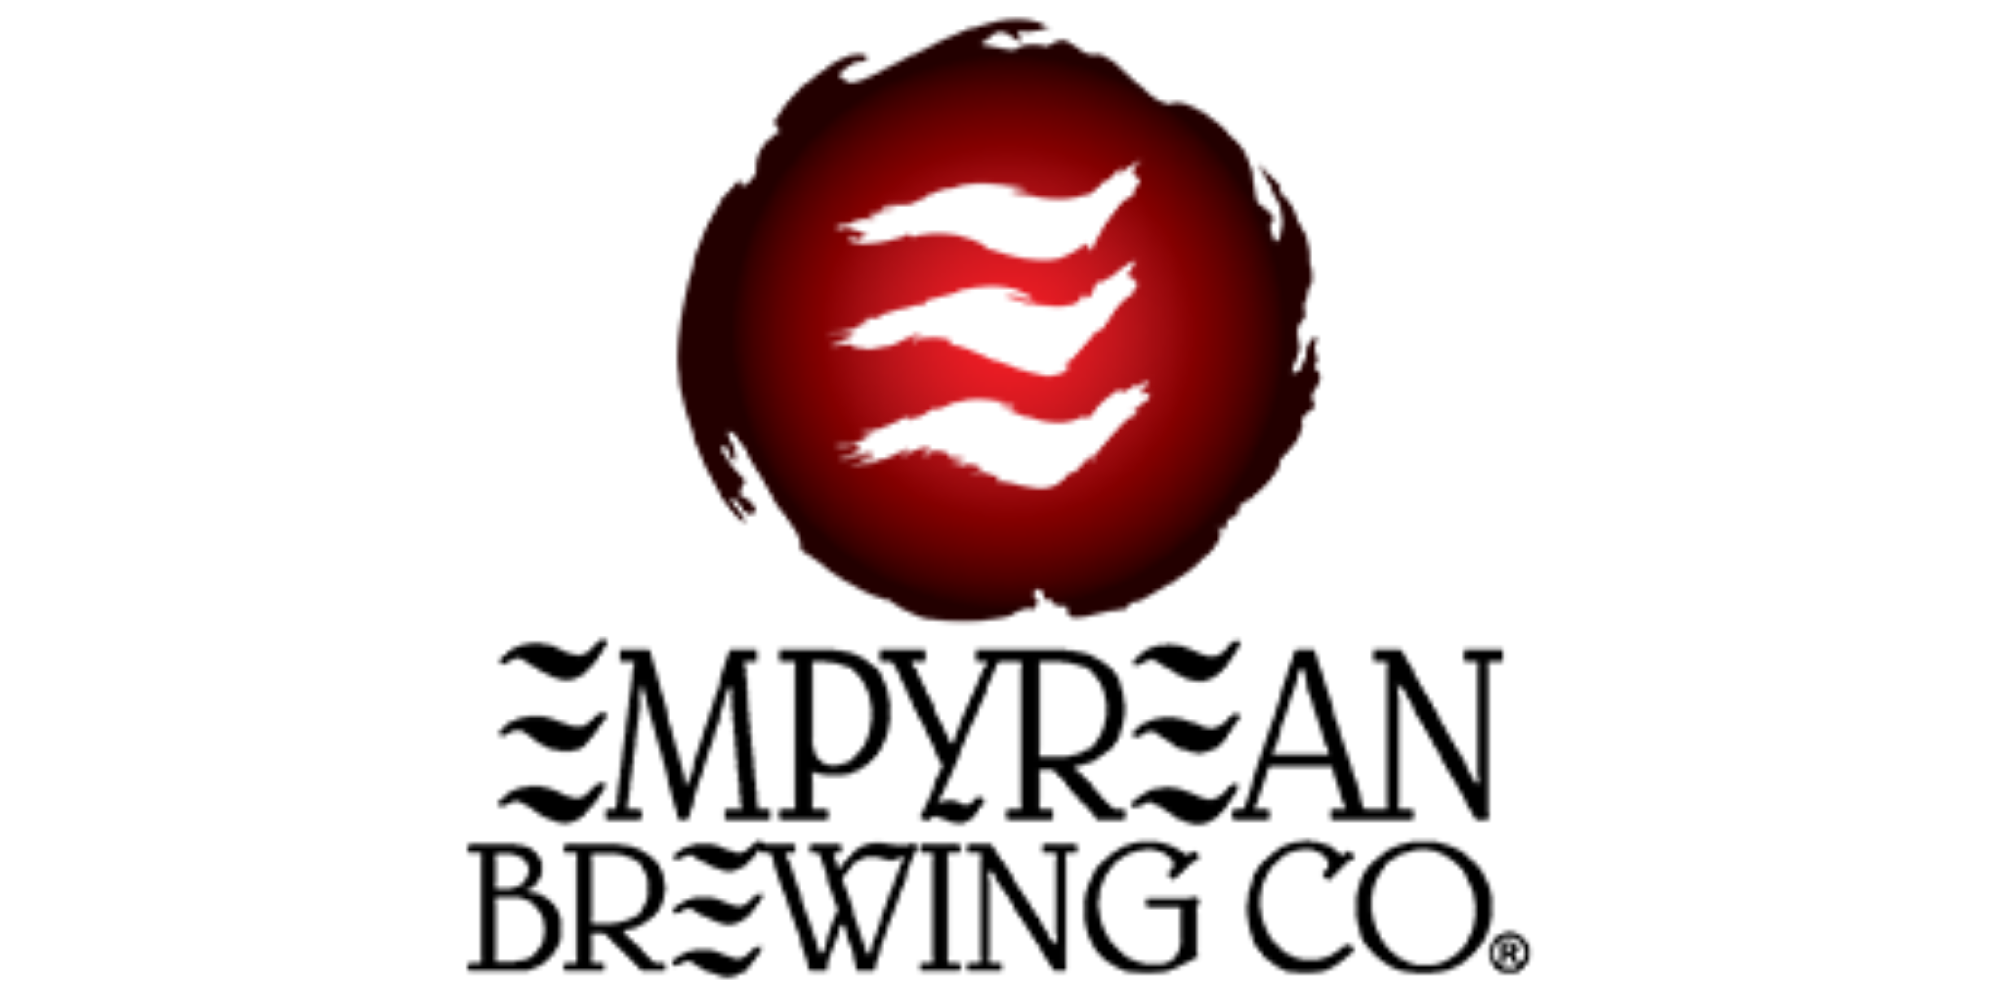 Empyrean Brewing Co.